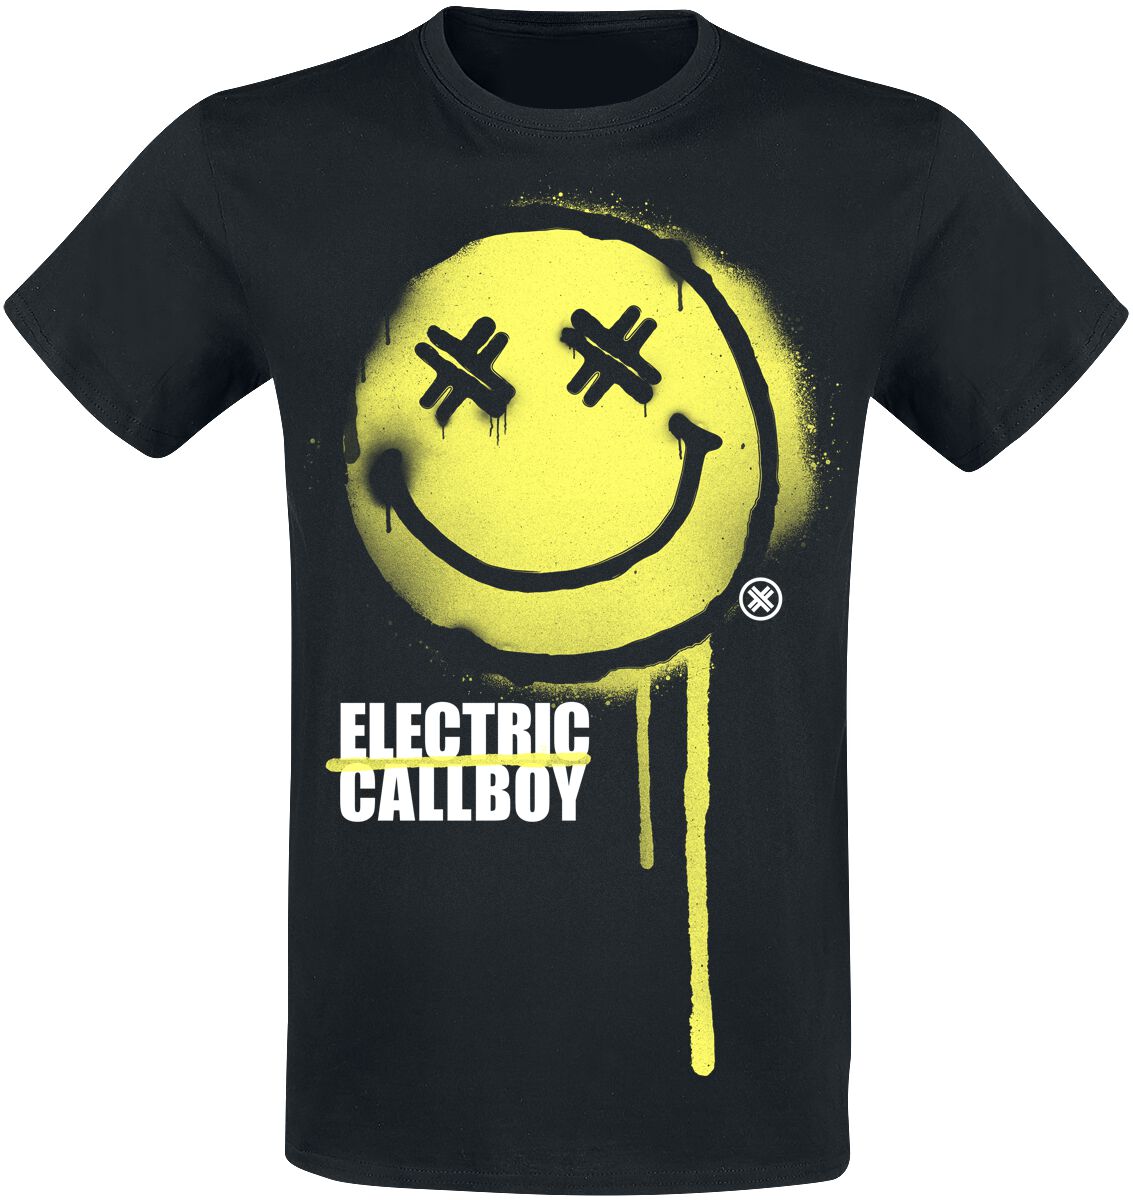 Electric Callboy T-Shirt - Spray Smile - S bis XXL - für Männer - Größe XXL - schwarz  - Lizenziertes Merchandise!